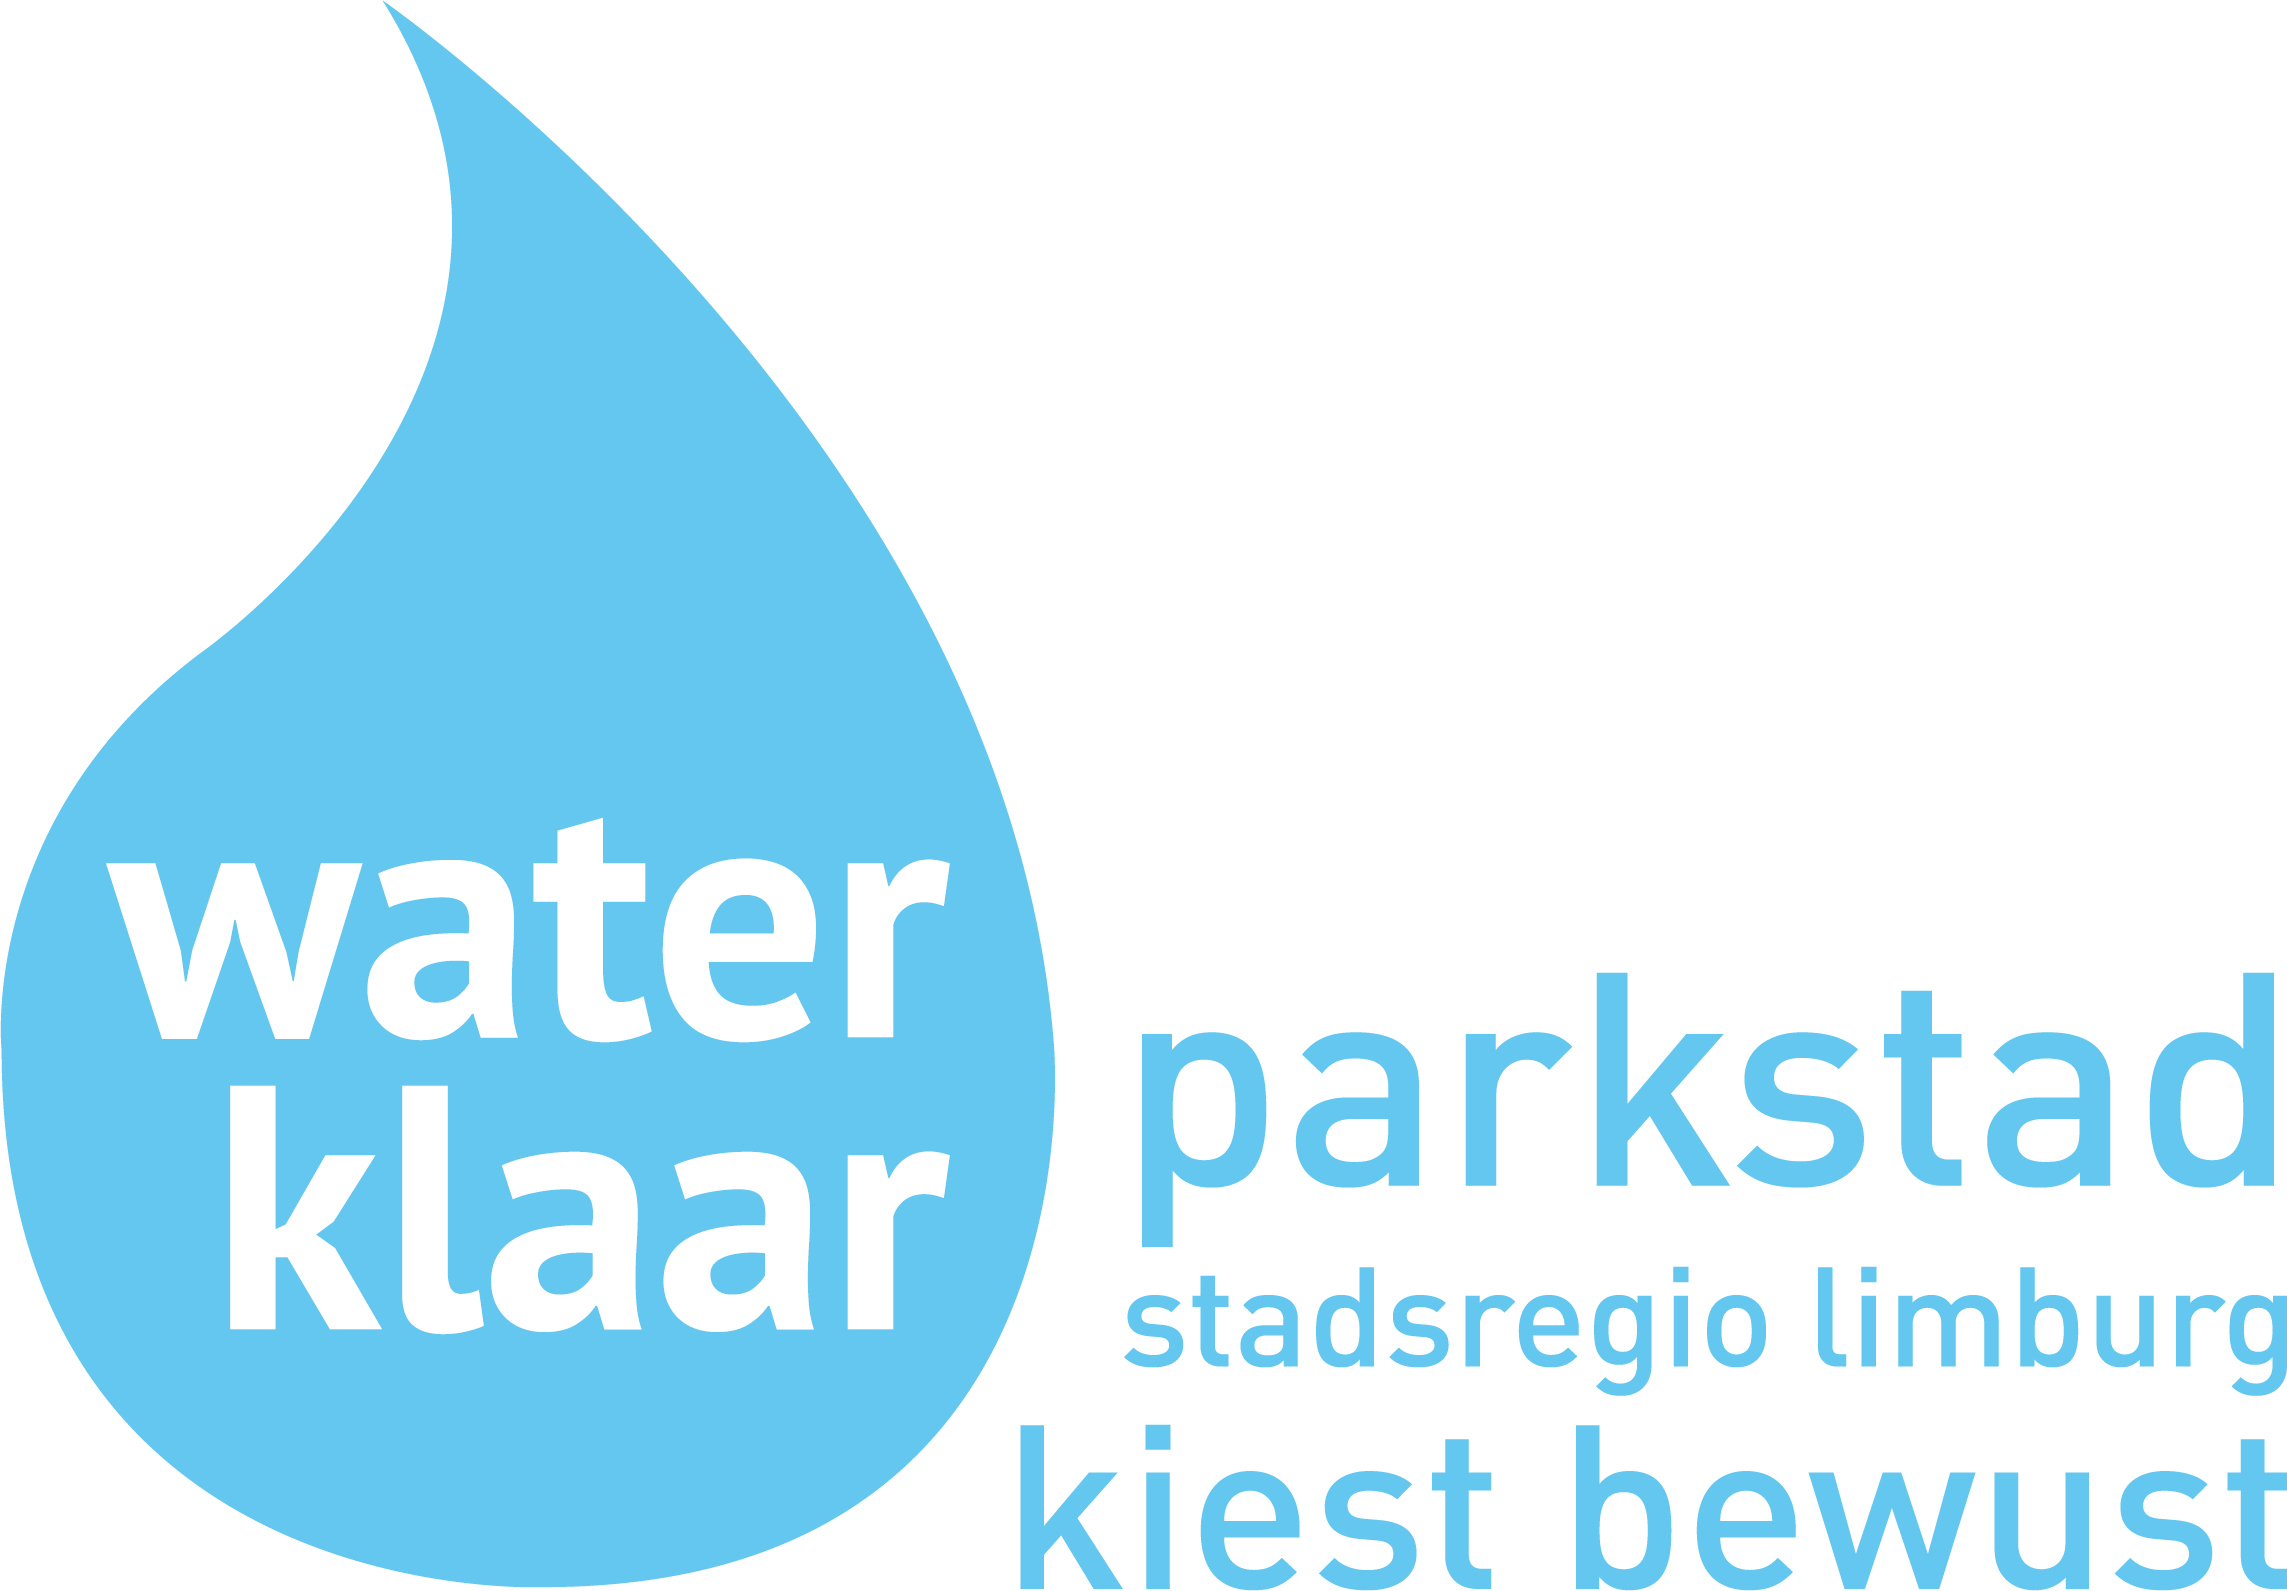 Waterklaar Parkstad